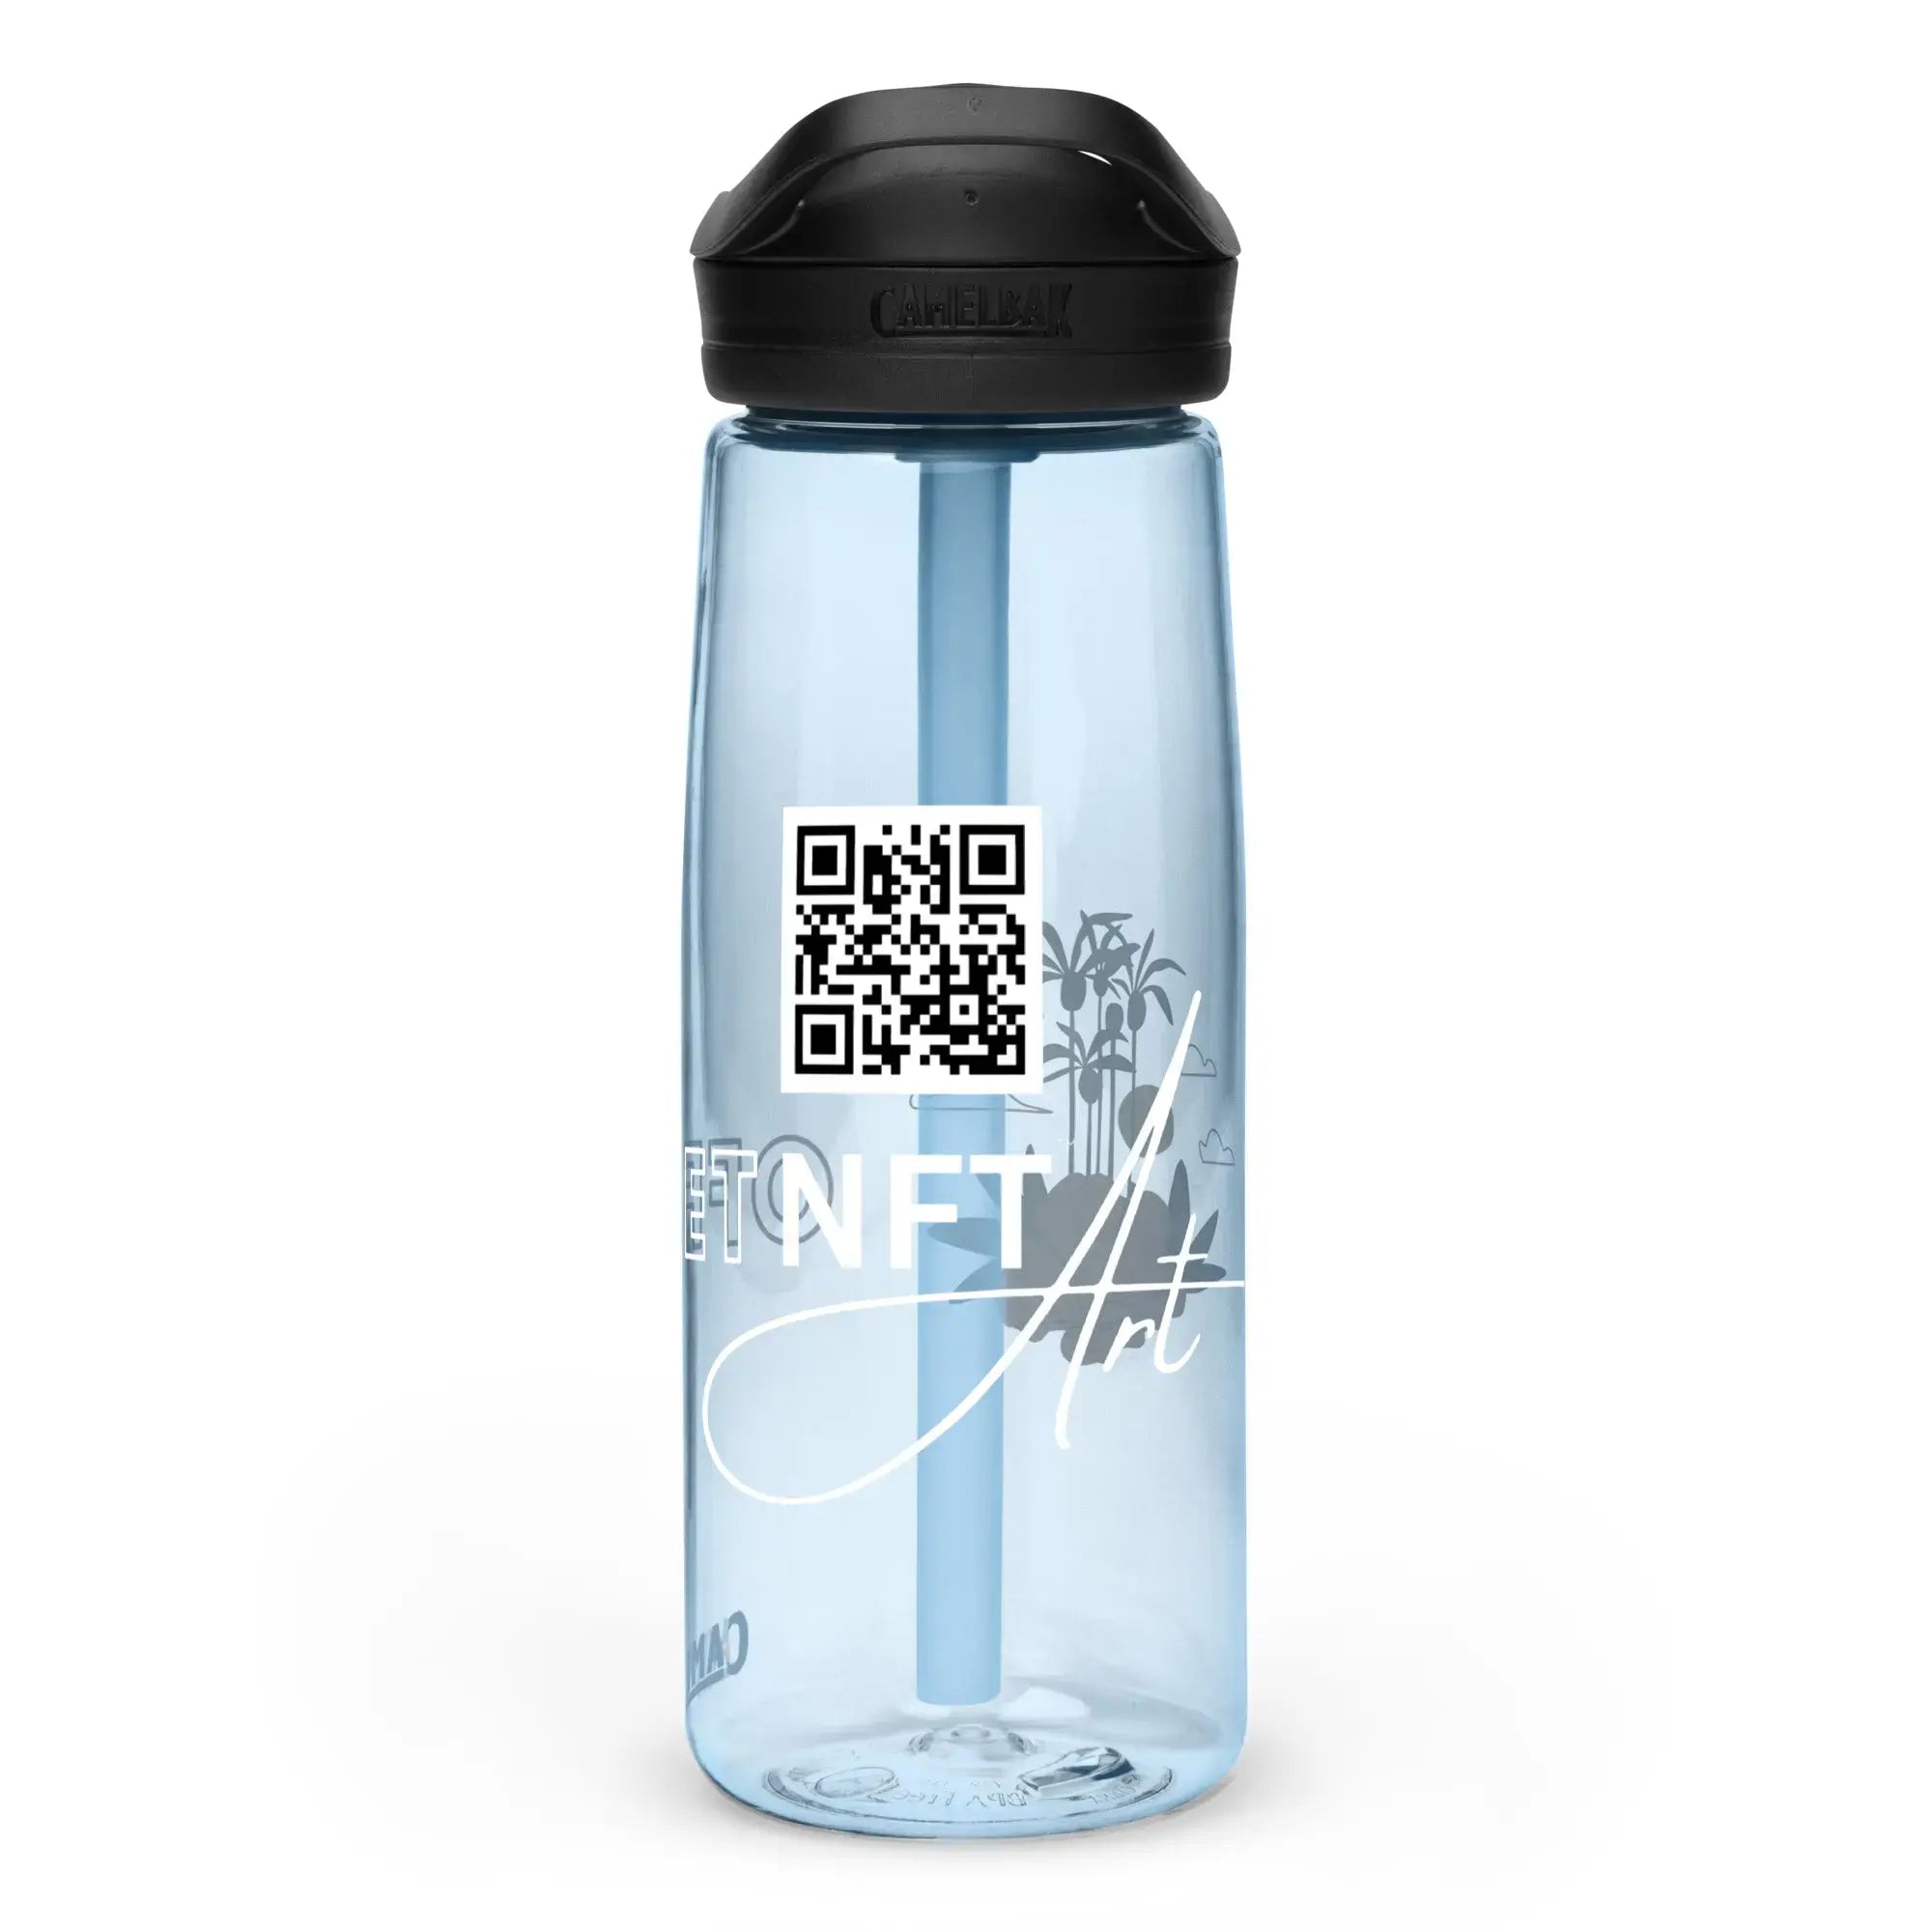 Sports water bottle GeorgeKenny Design